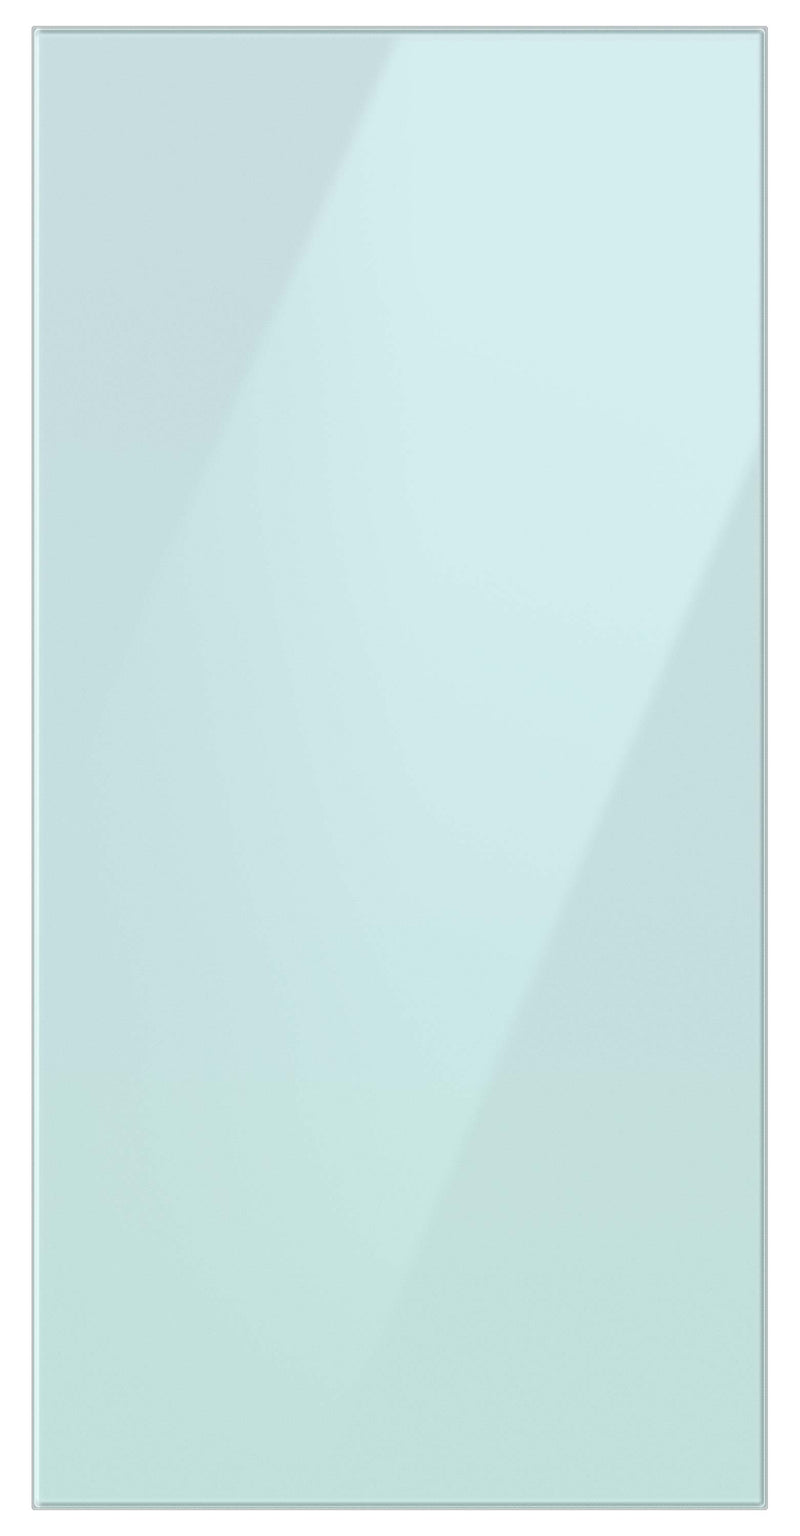 Samsung BESPOKE Morning Blue Glass Top Door Panel for 4-Door Refrigerator - RA-F18DU4CM/AA